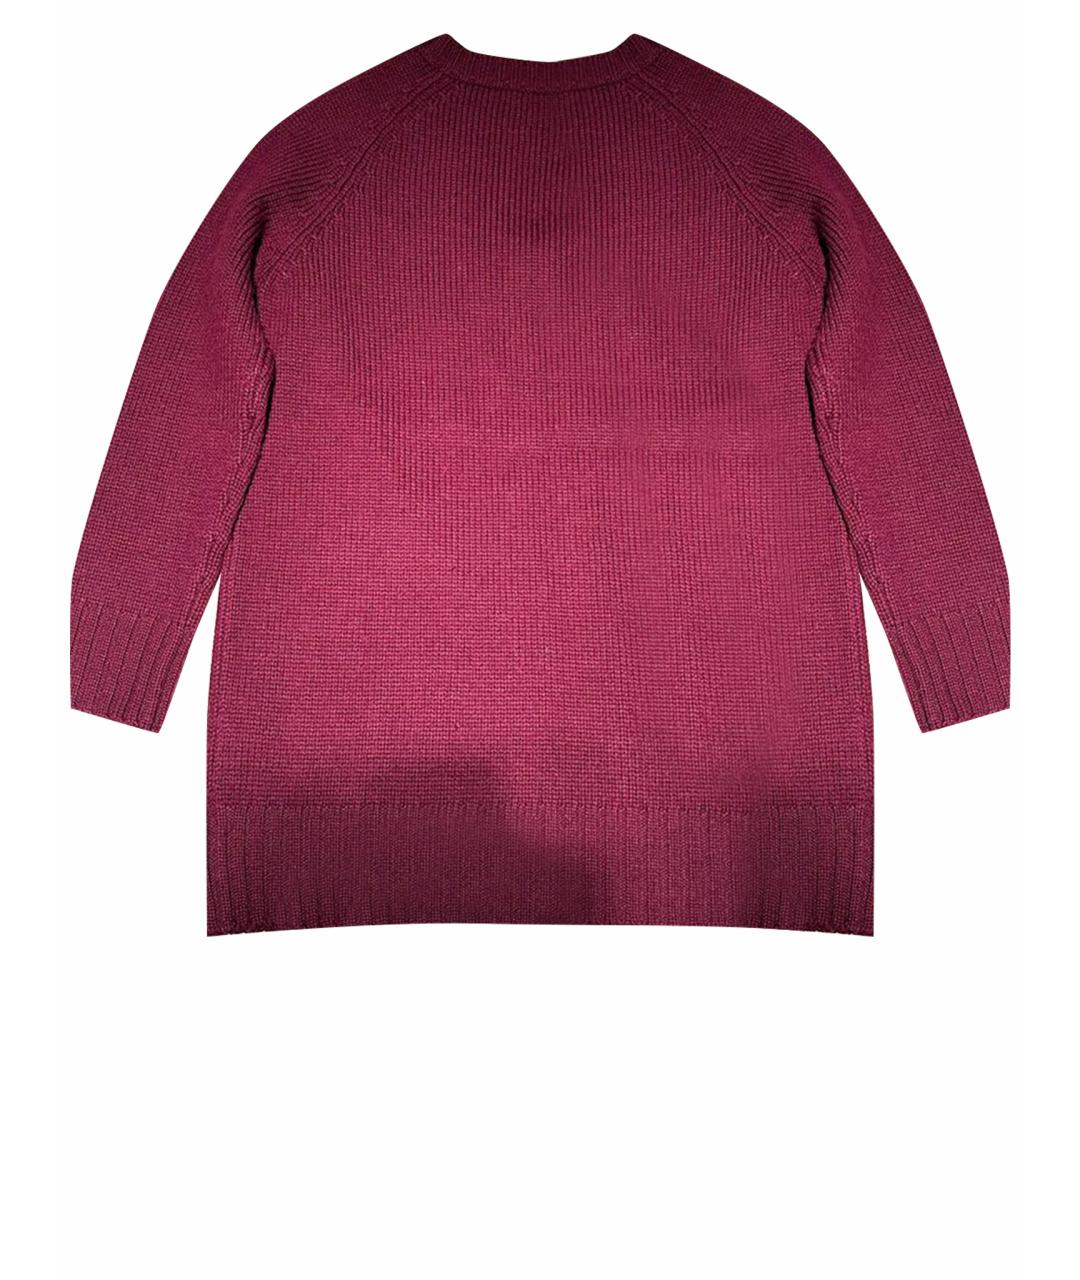 JIL SANDER Бордовый шерстяной джемпер / свитер, фото 1